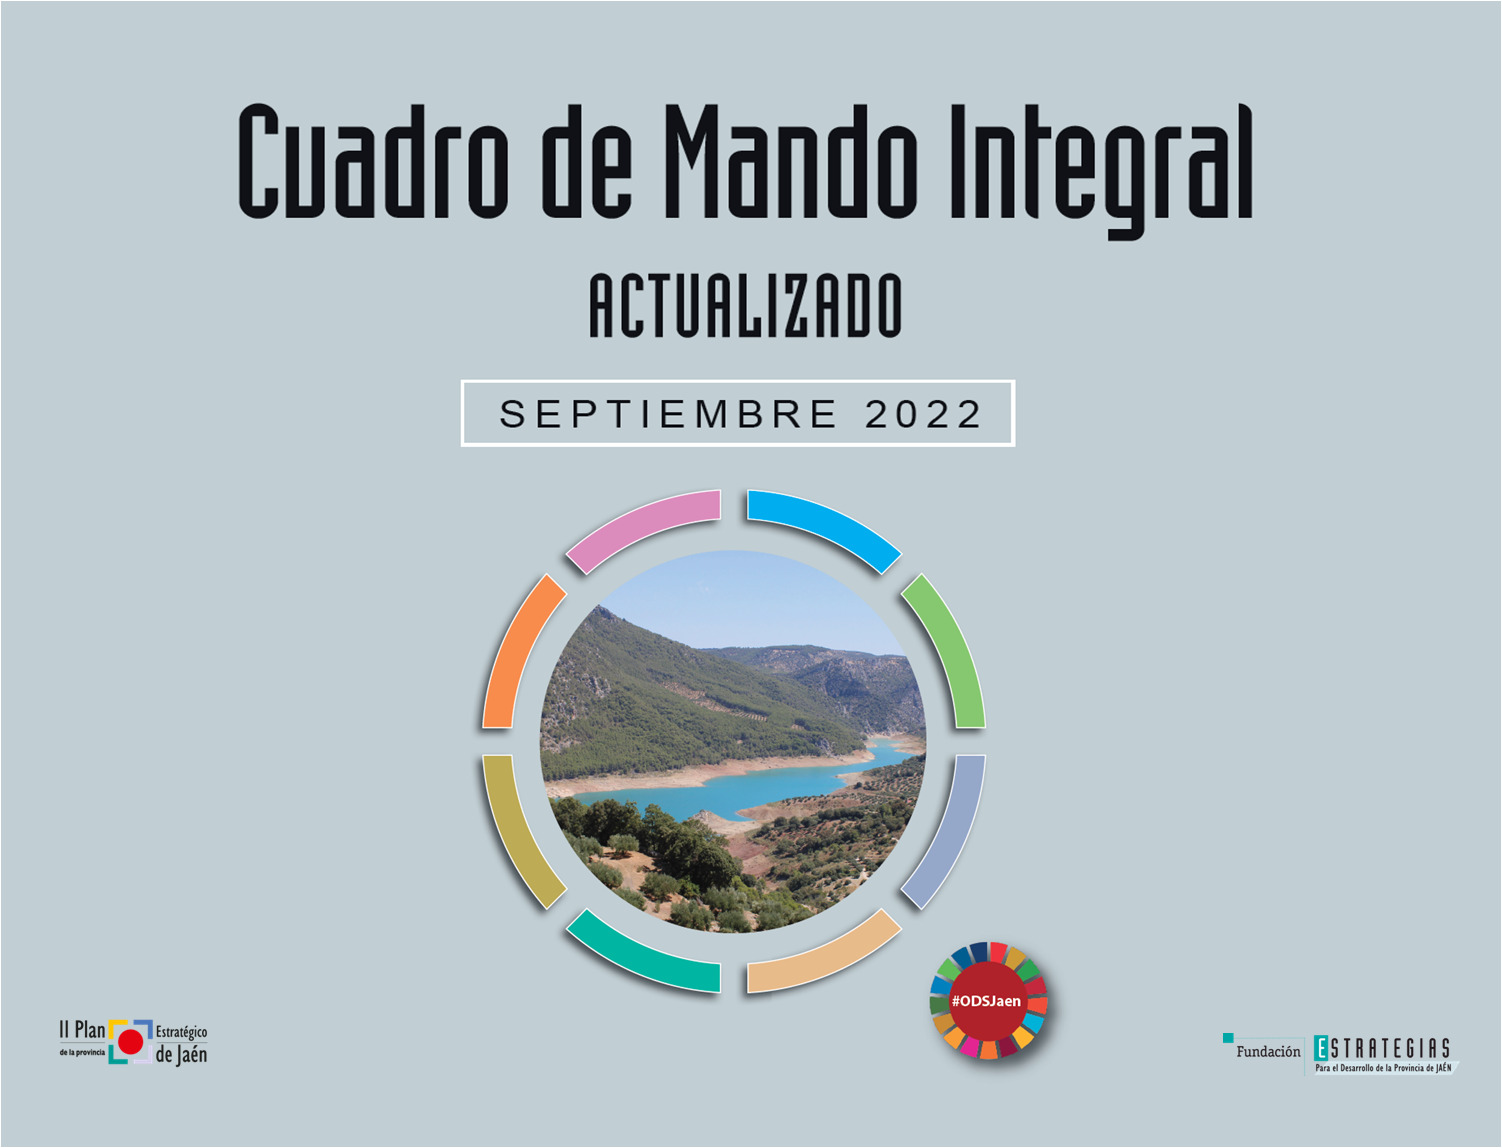 La Fundación “Estrategias” publica una nueva edición del Cuadro de Mando Integral con los datos actualizados a 31 de agosto de 2022